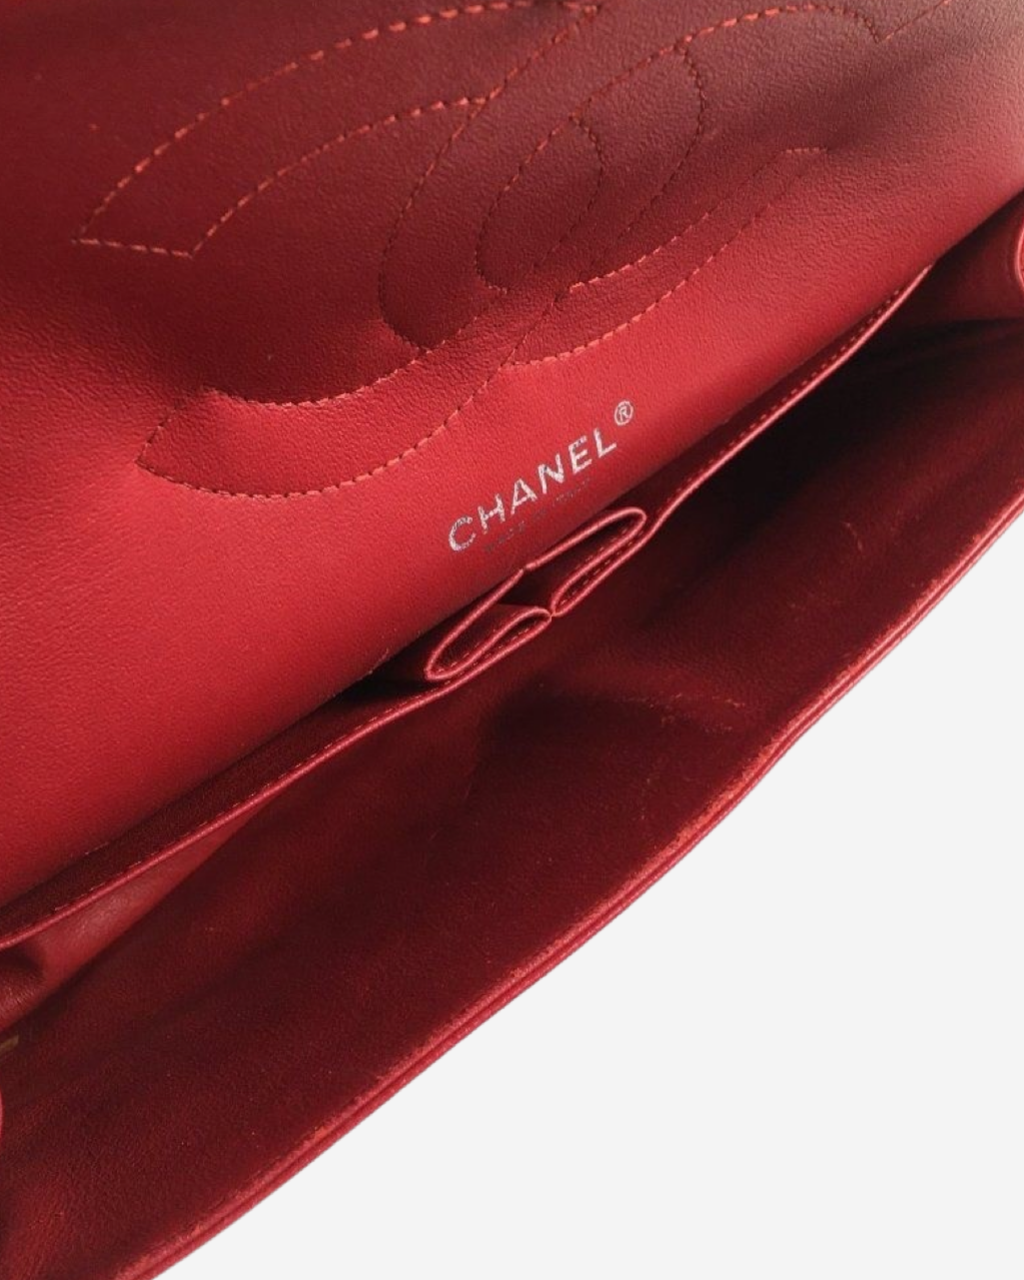 Bolsa Chanel Double Flap Jumbo